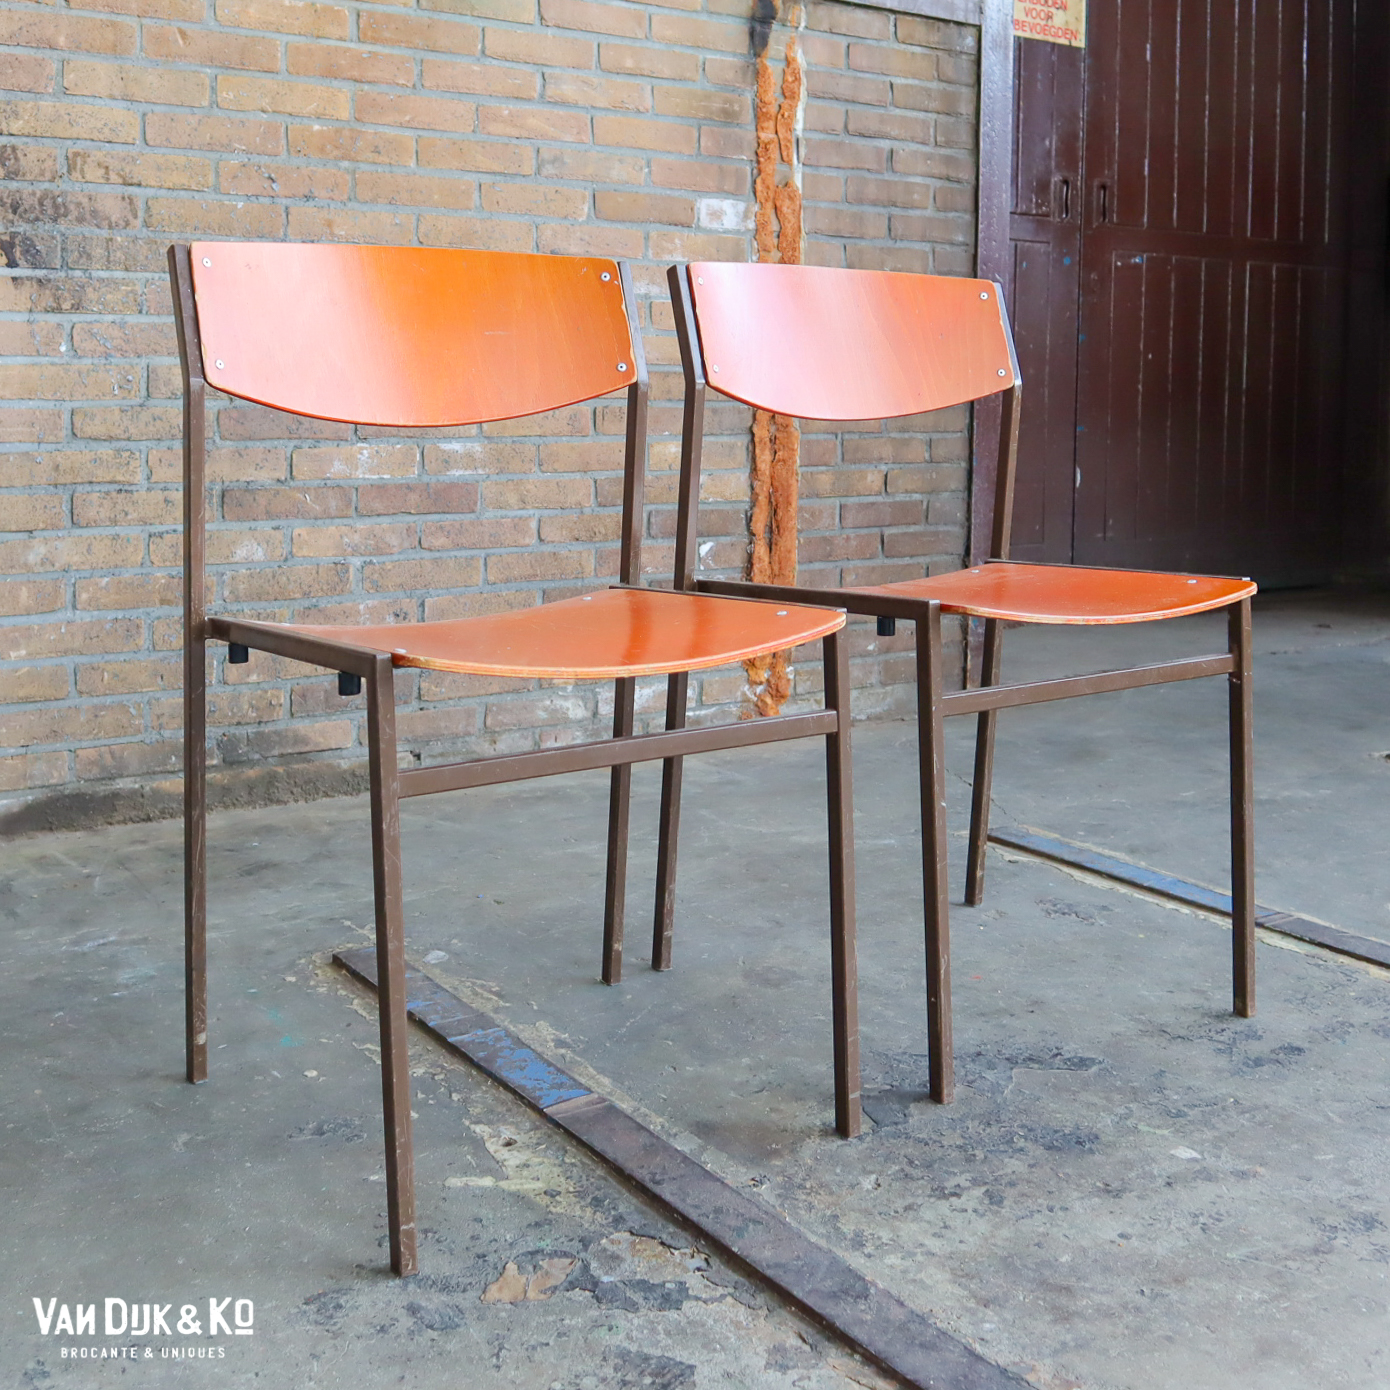 Extreem marge Woedend Industriële stoelen – Gijs van der Sluis » Van Dijk & Ko